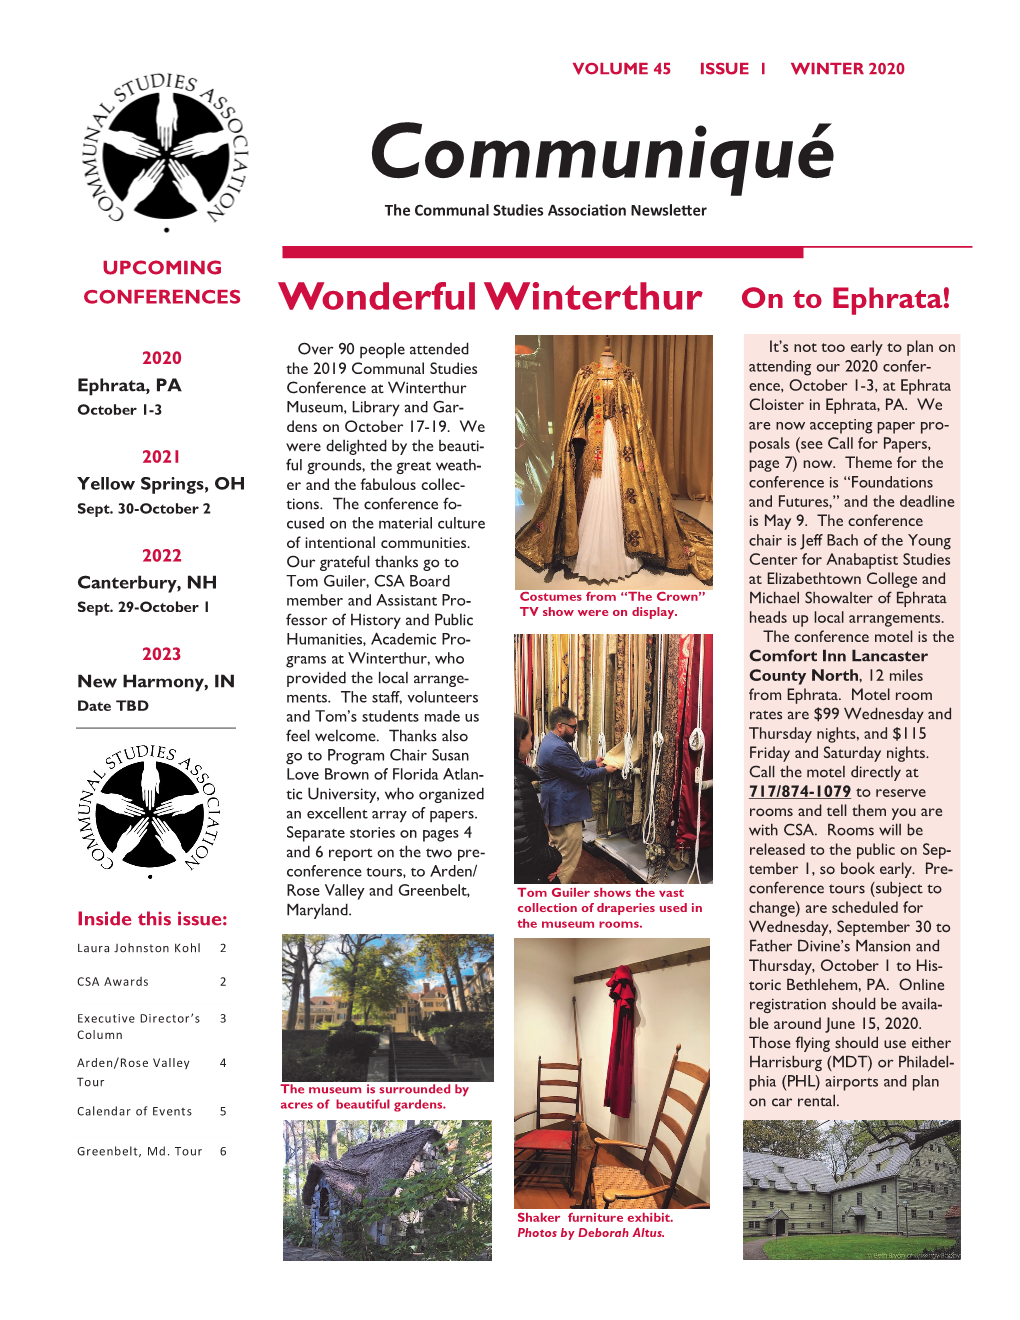 Communiqué the Communal Studies Association Newsletter